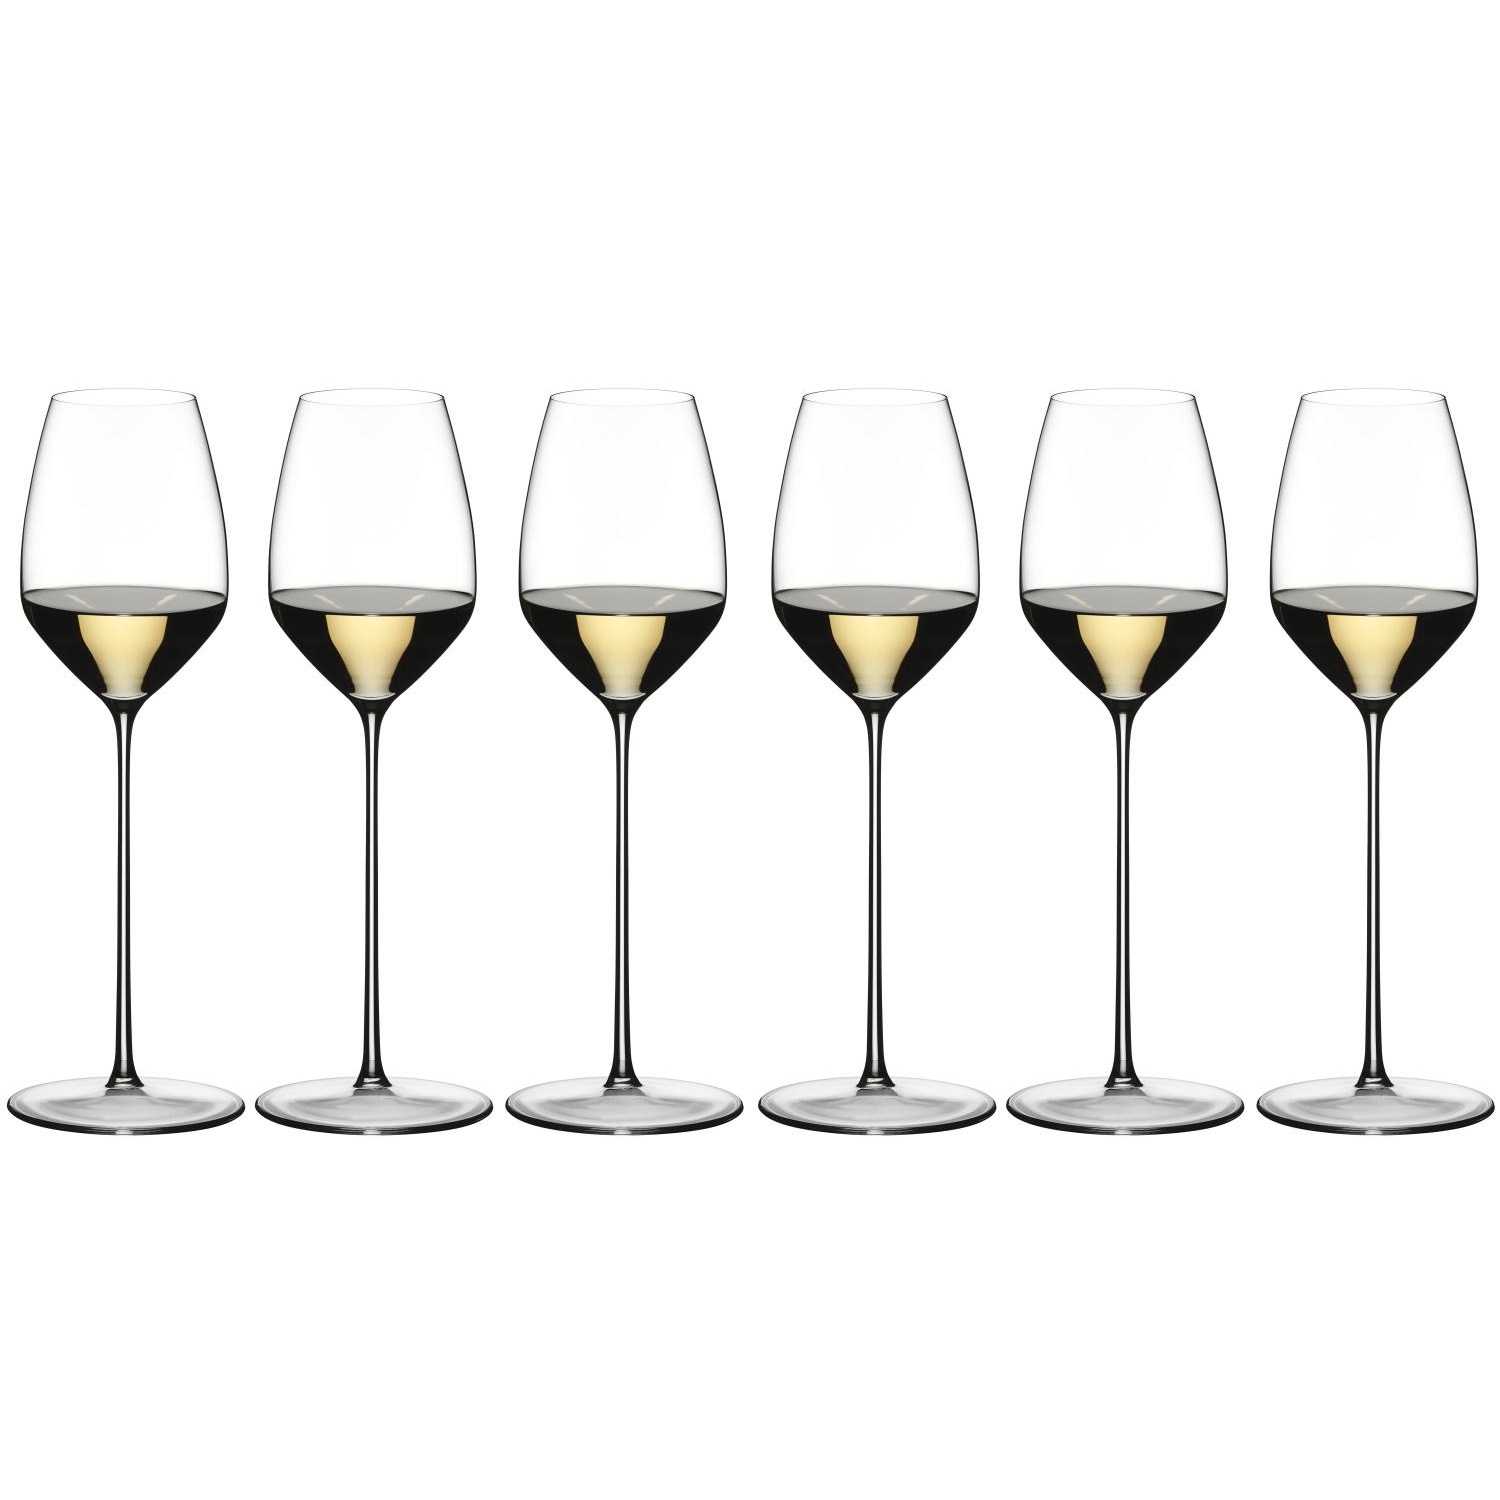 6 бокалов для белого вина RIEDEL MAX Riesling 490 мл (арт. 0423/15)